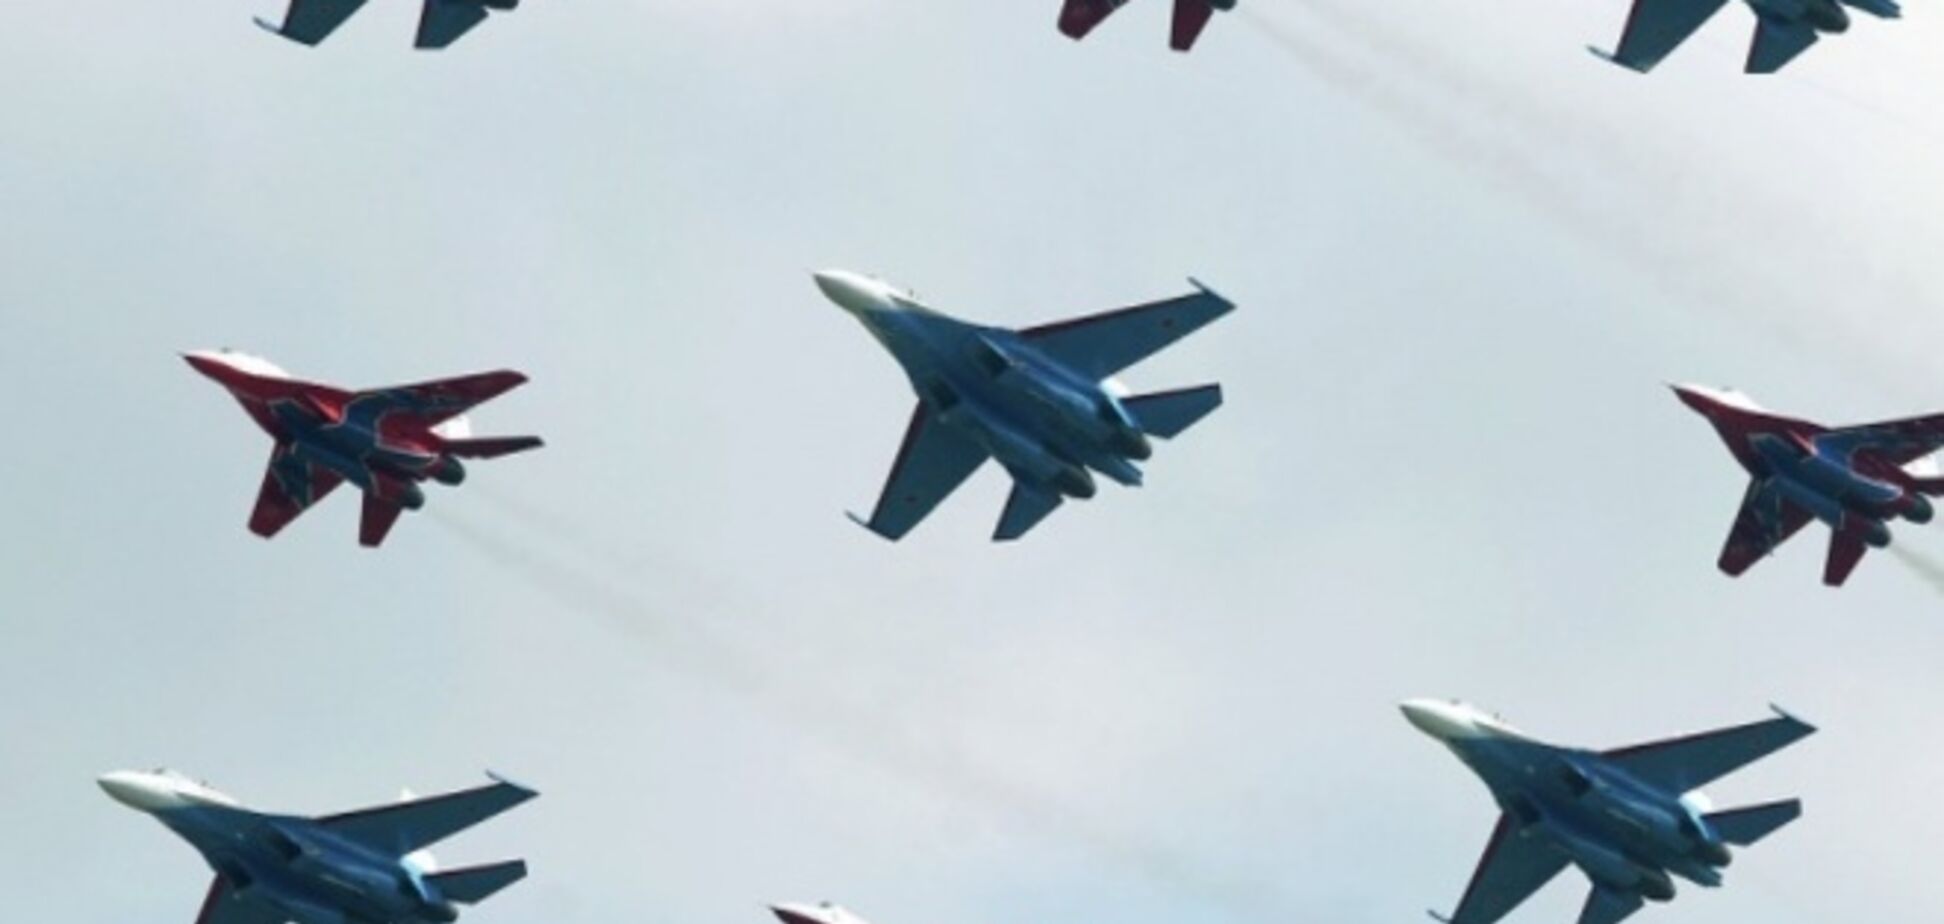 Военные пилоты РФ получали приказ умышленно нарушать воздушное пространство Украины - СМИ